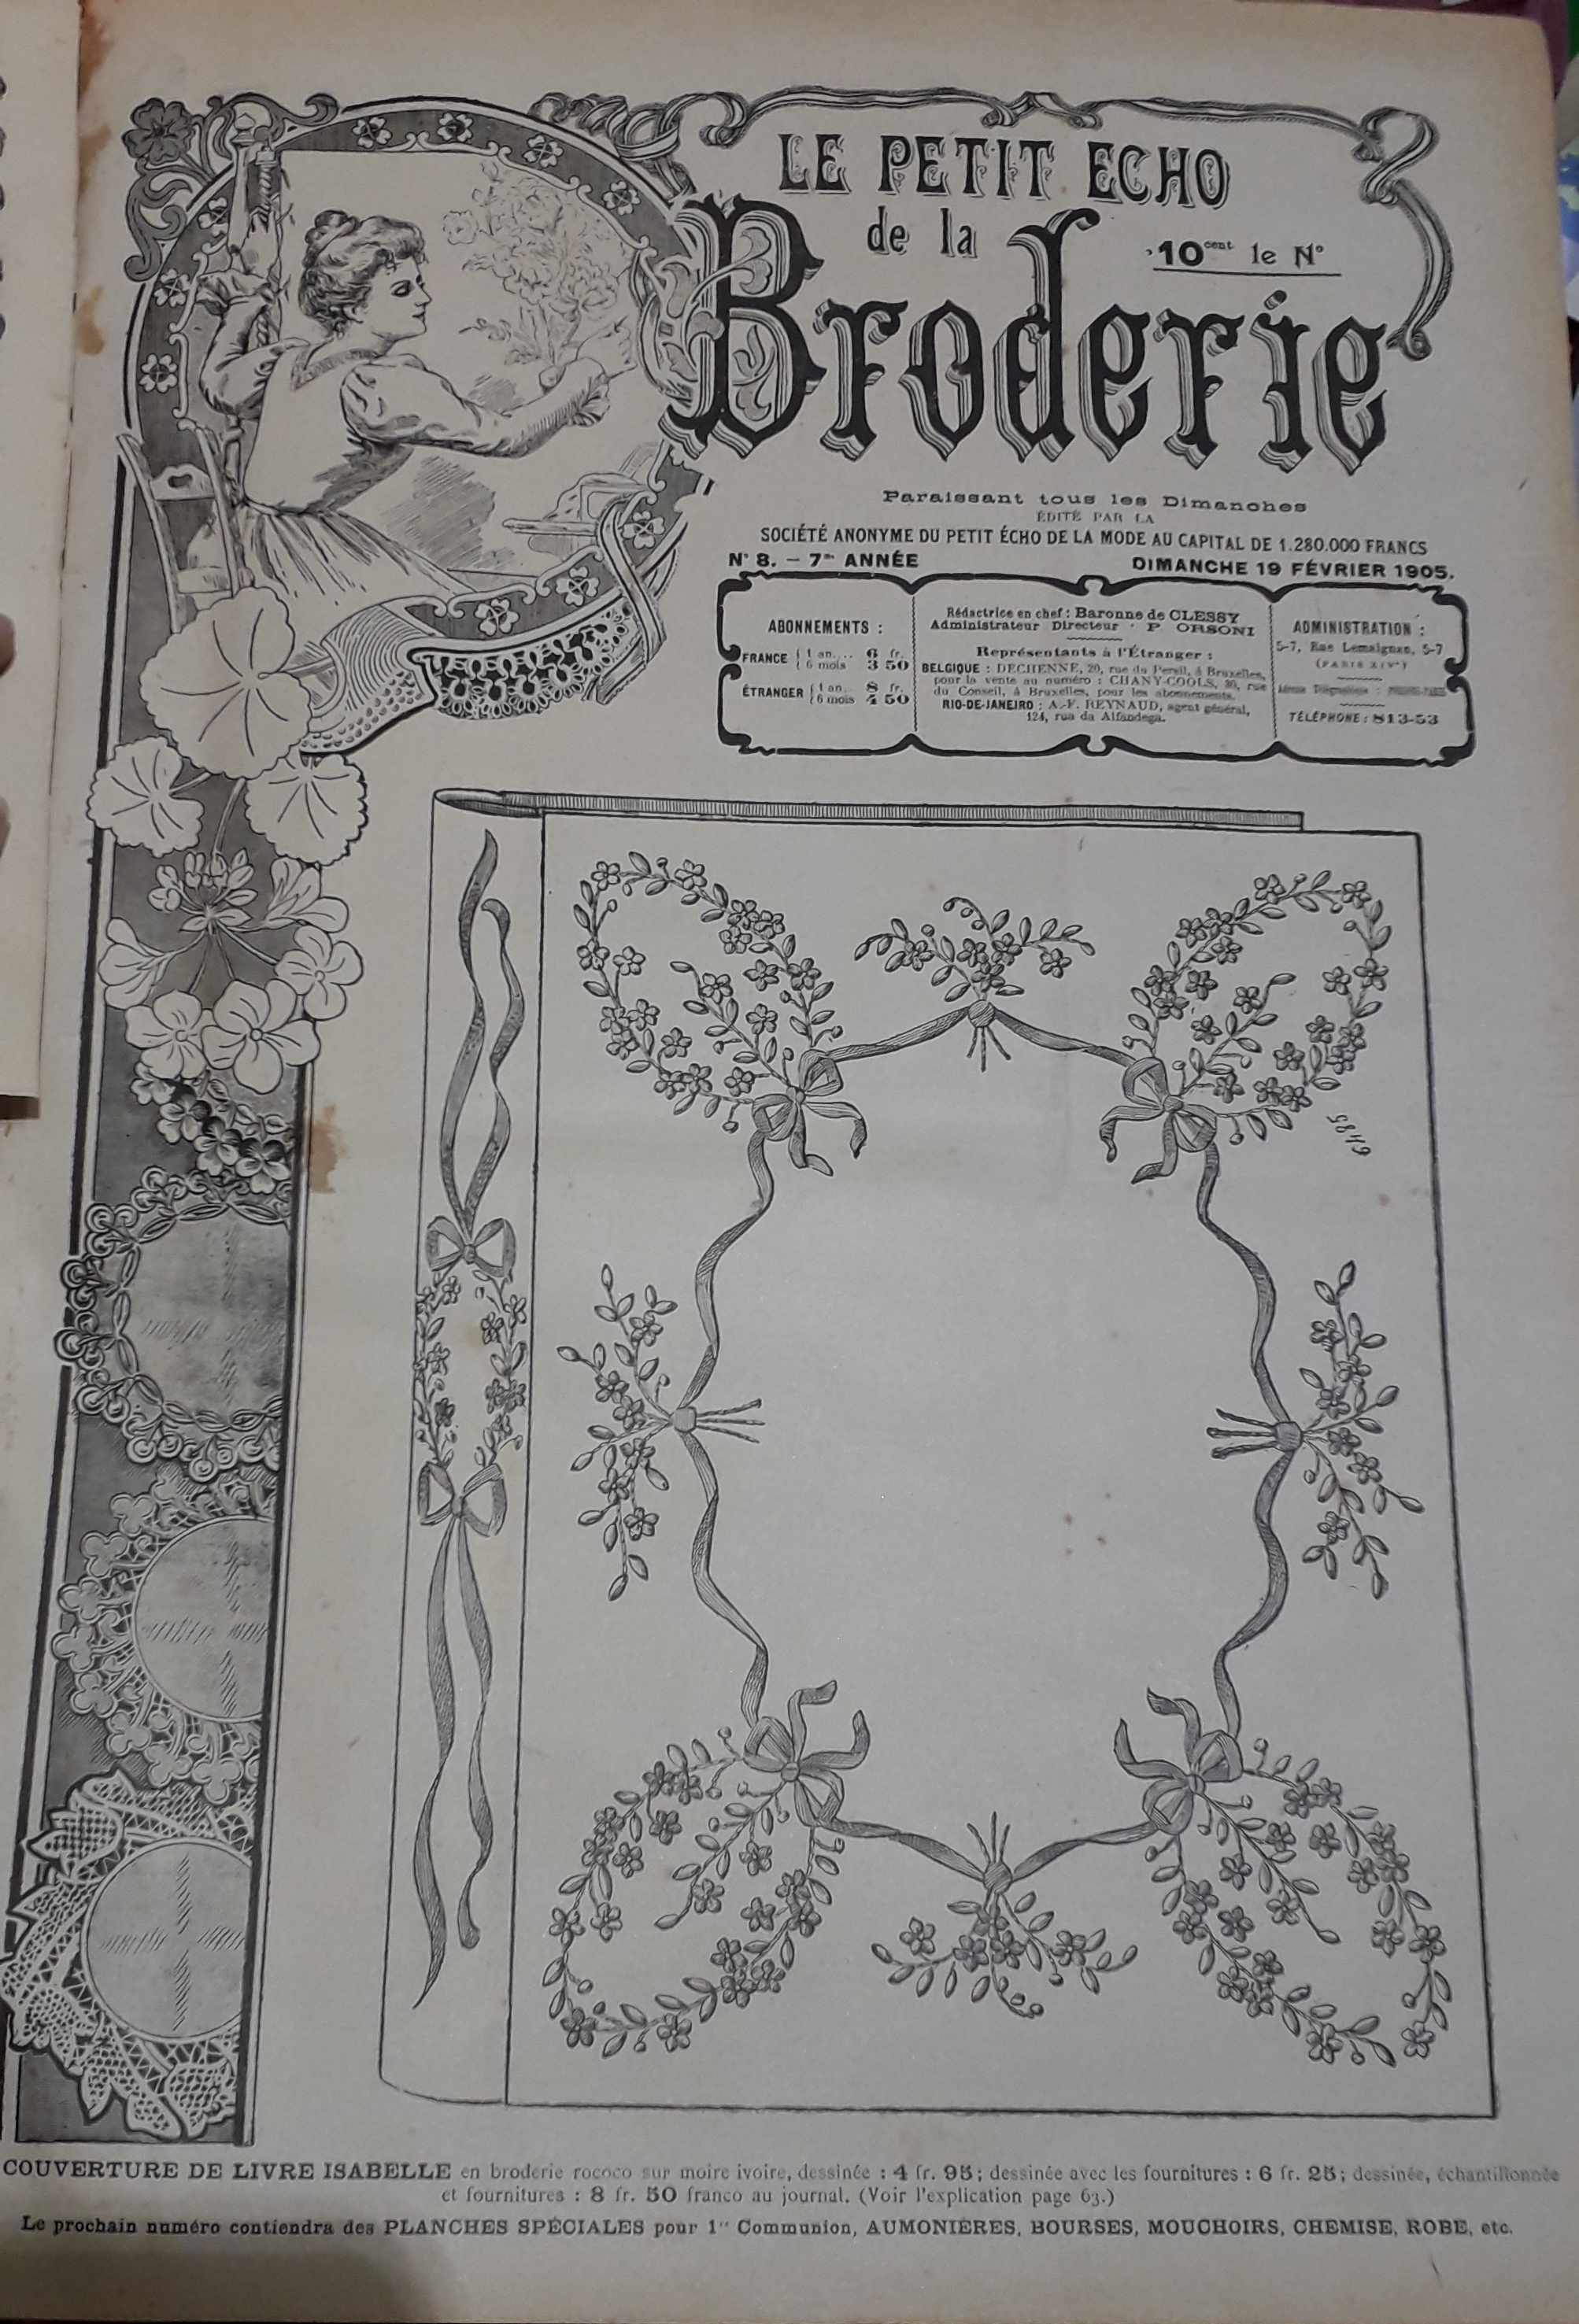 Le Petit Echo de la Broderie, 7e anne, n8 (19 fvrier 1905) : Couverture de livre en broderie rococo / Dessus de clavier / Col / Motifs en venise / Empicement de chemise /...